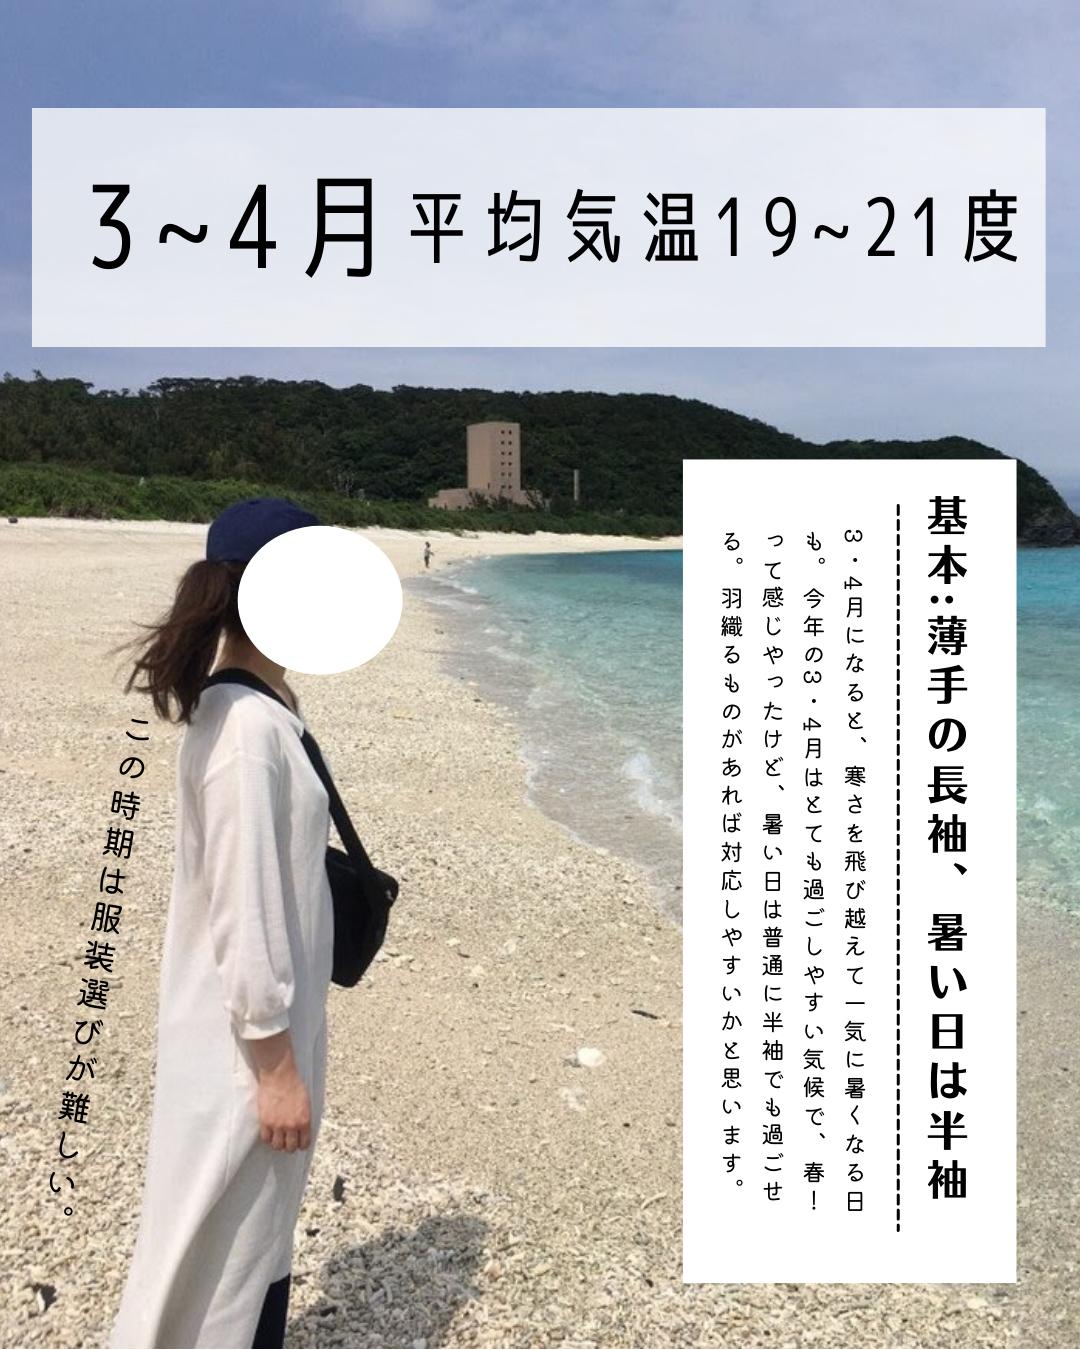 沖縄旅行 服装どうする みさ 沖縄移住夫婦が投稿したフォトブック Lemon8